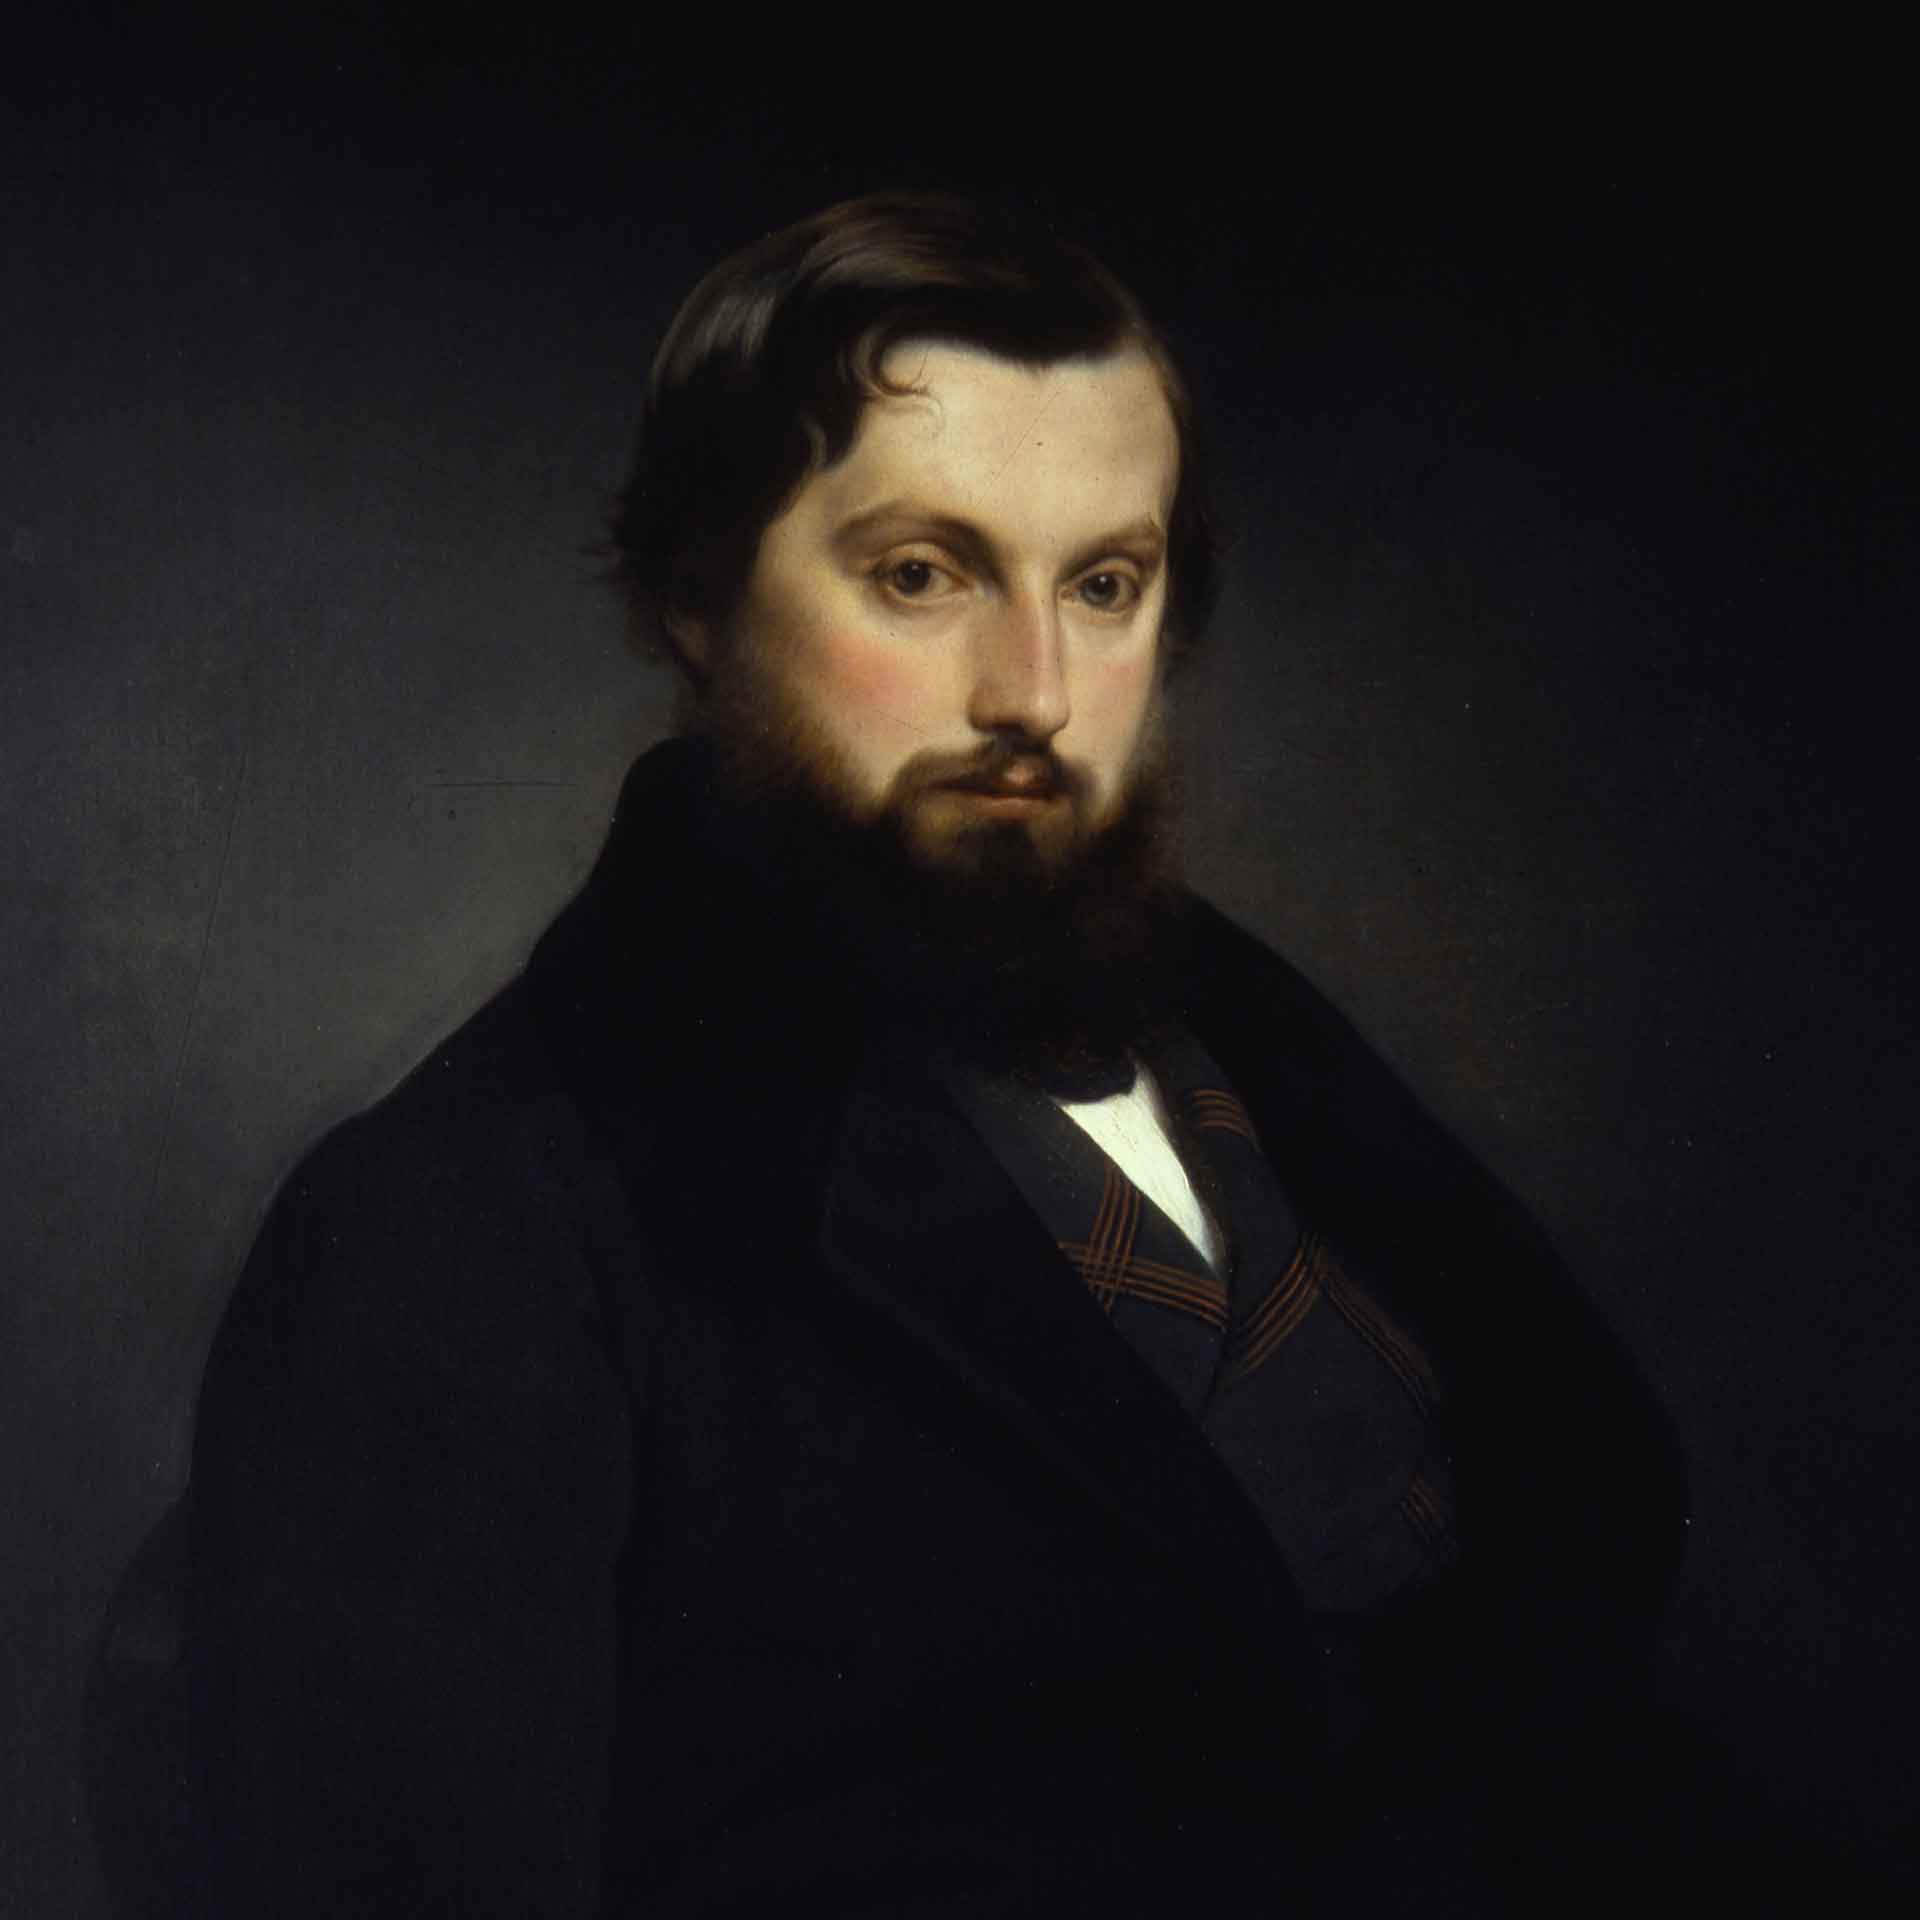 Ritratto di Gian Giacomo Poldi Pezzoli, raffigurato come un uomo con barba, sfondo scuro, elegante, sguardo pensieroso.